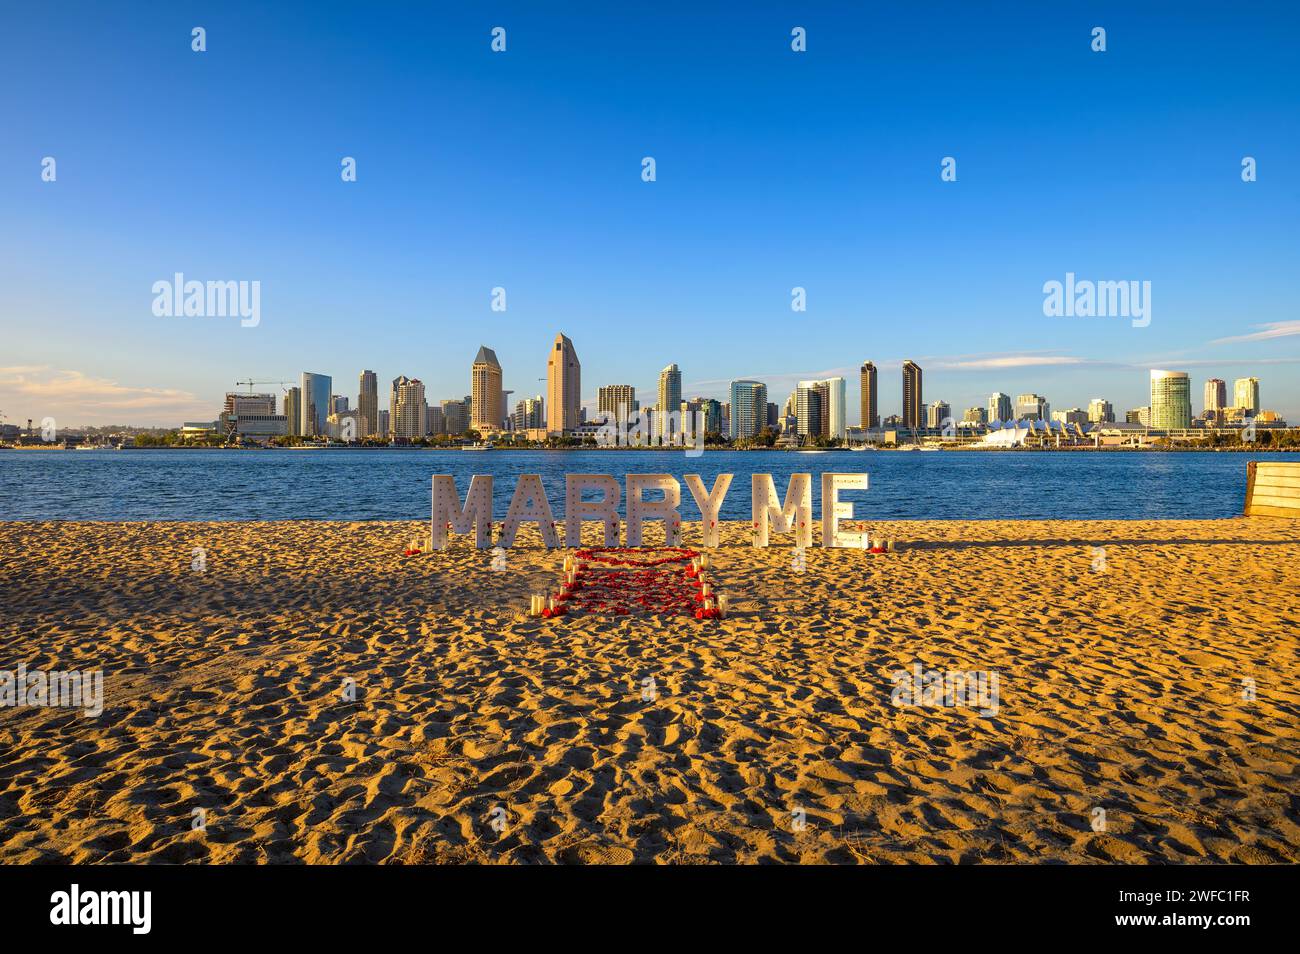 Configuration de la proposition de plage avec signe « Marry Me » et Skyline de San Diego, Californie Banque D'Images